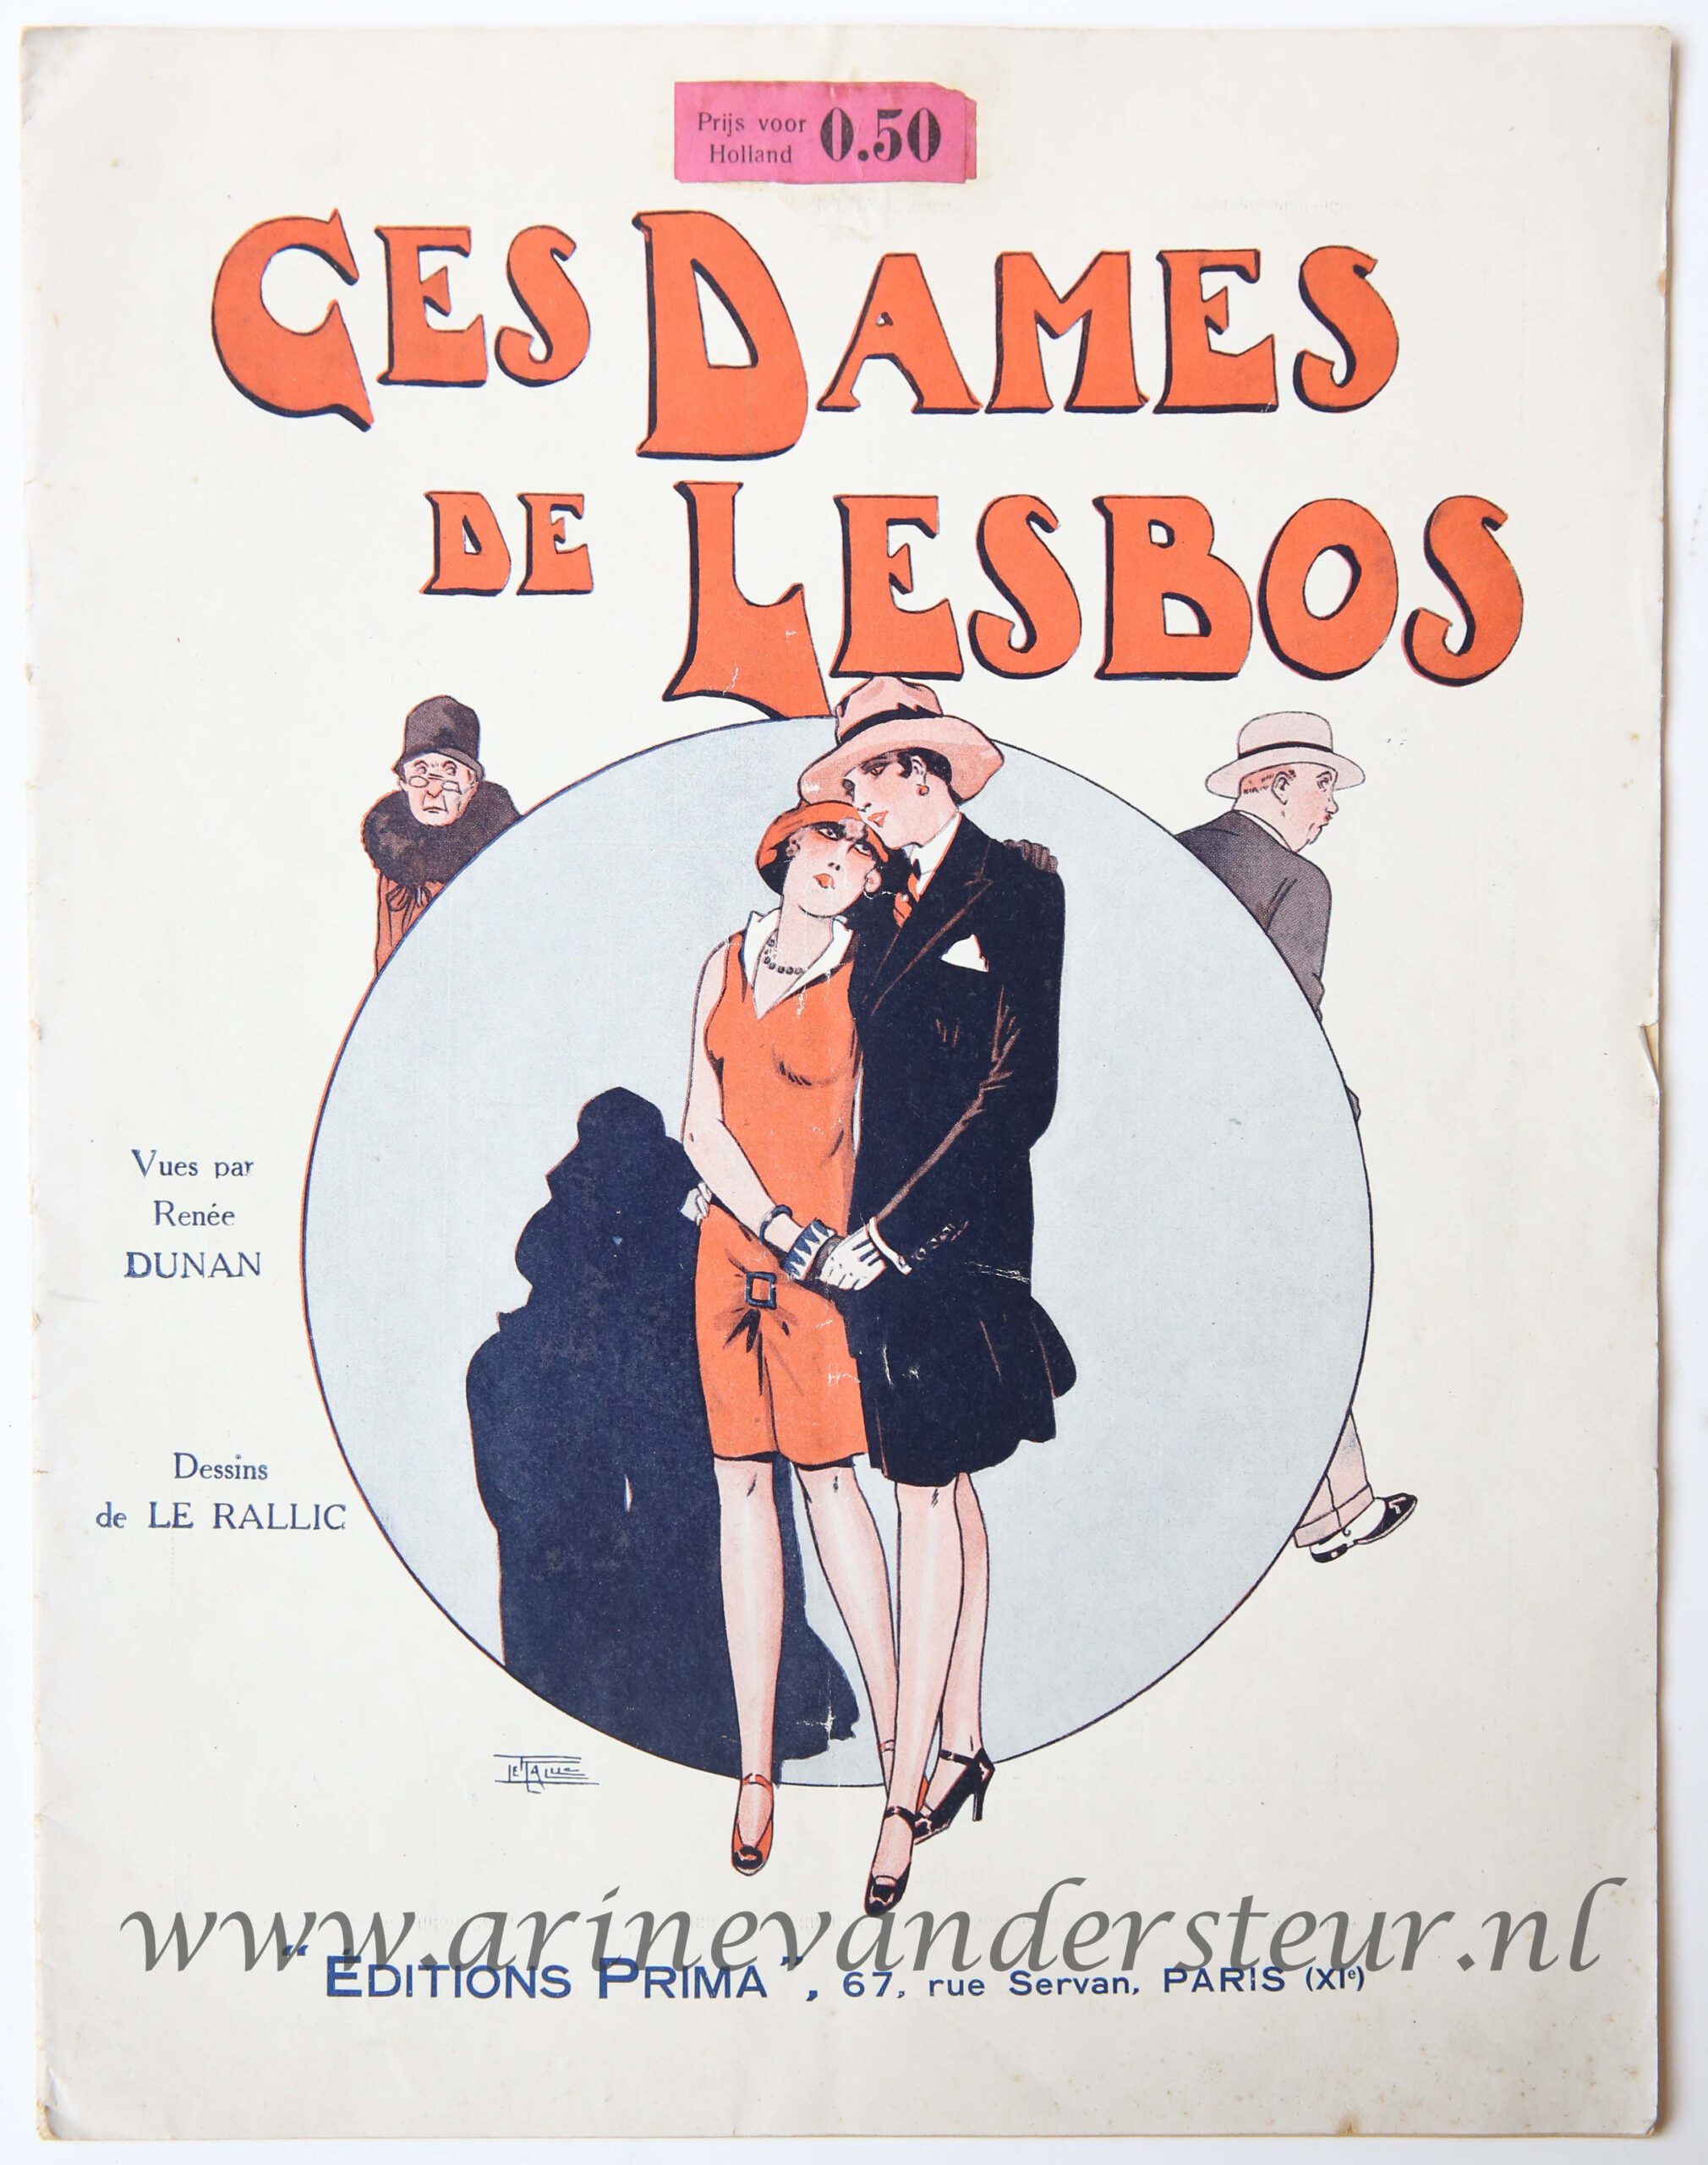 [Rare lesbian erotic magazine] Dunan, Renée, Ces Dames de Lesbos, Vues par Renée Dunan, Dessins de Le Rallic, Editions Prima, Paris [1928], 32 pp. 32 x 25 cm, text in French.